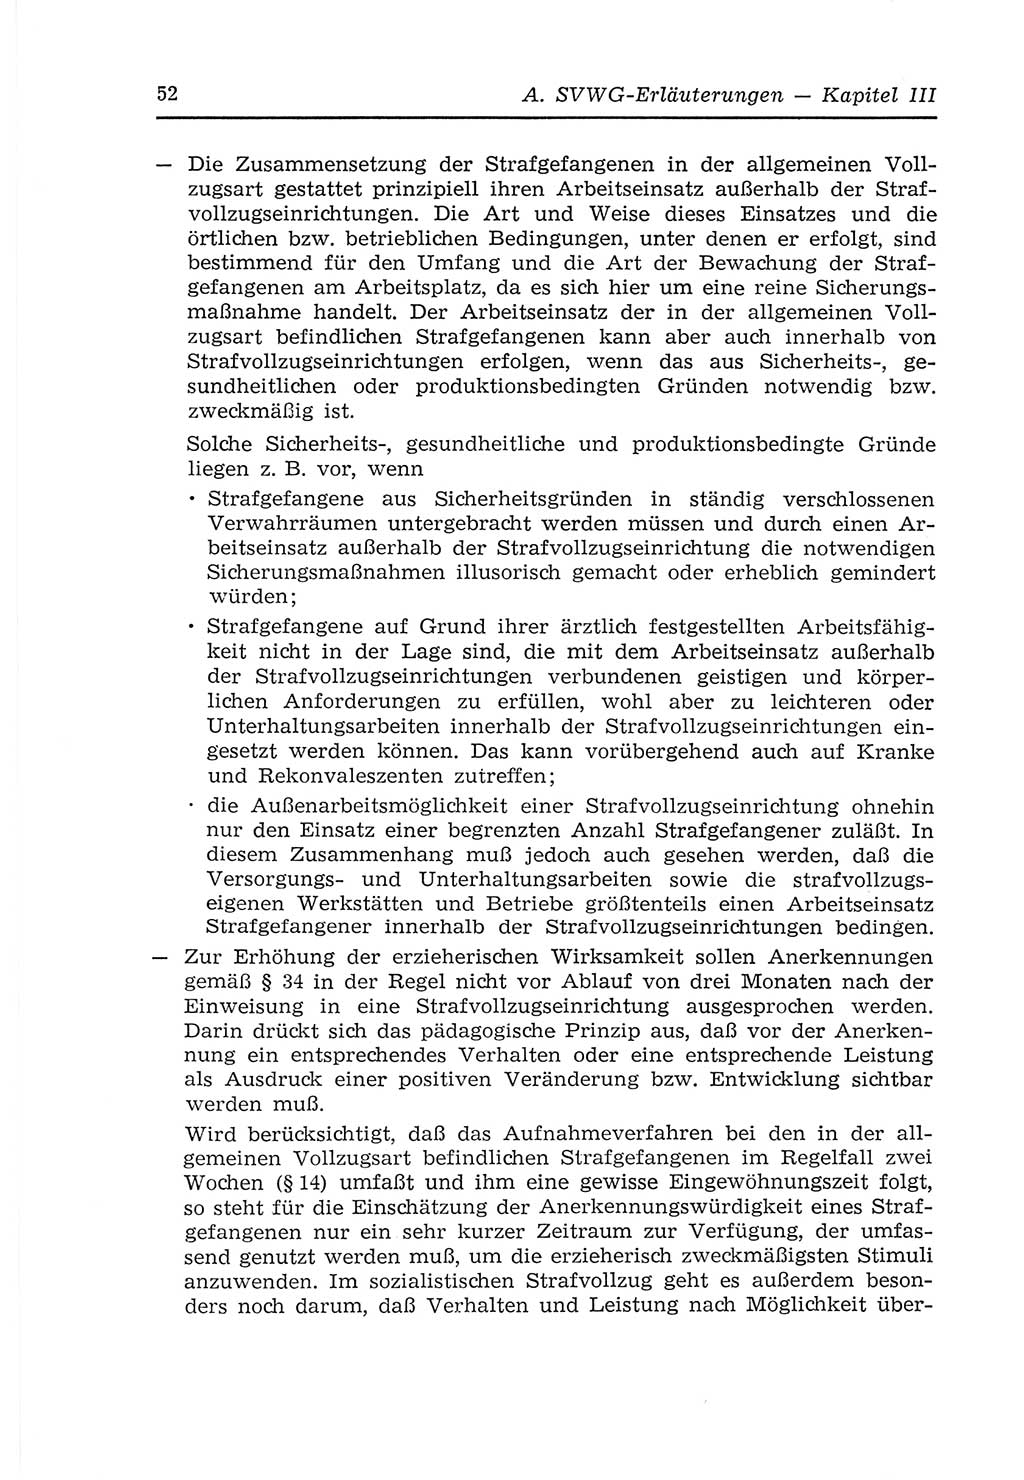 Strafvollzugs- und Wiedereingliederungsgesetz (SVWG) der Deutschen Demokratischen Republik (DDR) 1968, Seite 52 (SVWG DDR 1968, S. 52)